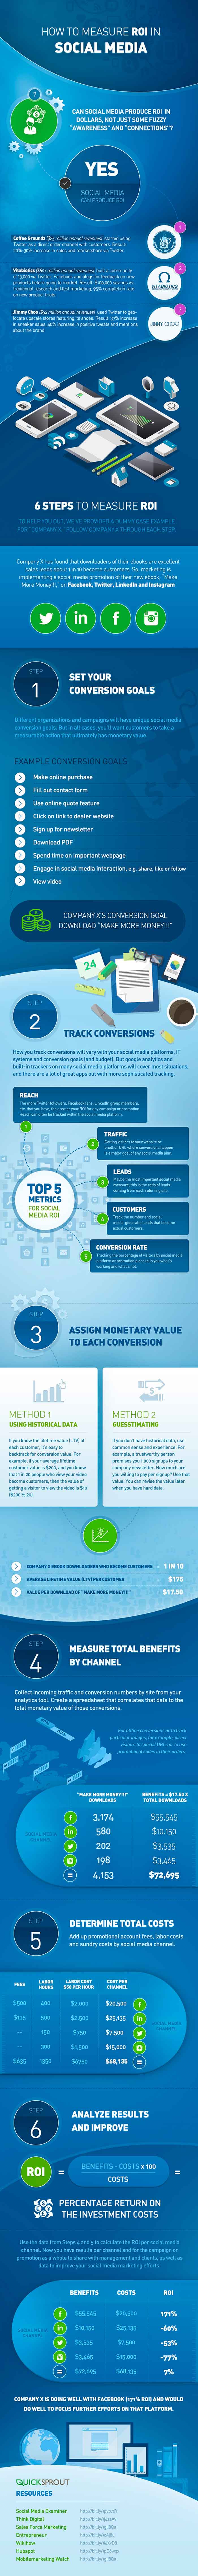 Infografia sobre los 6 pasos para medir el retorno de la inversion en Social Media